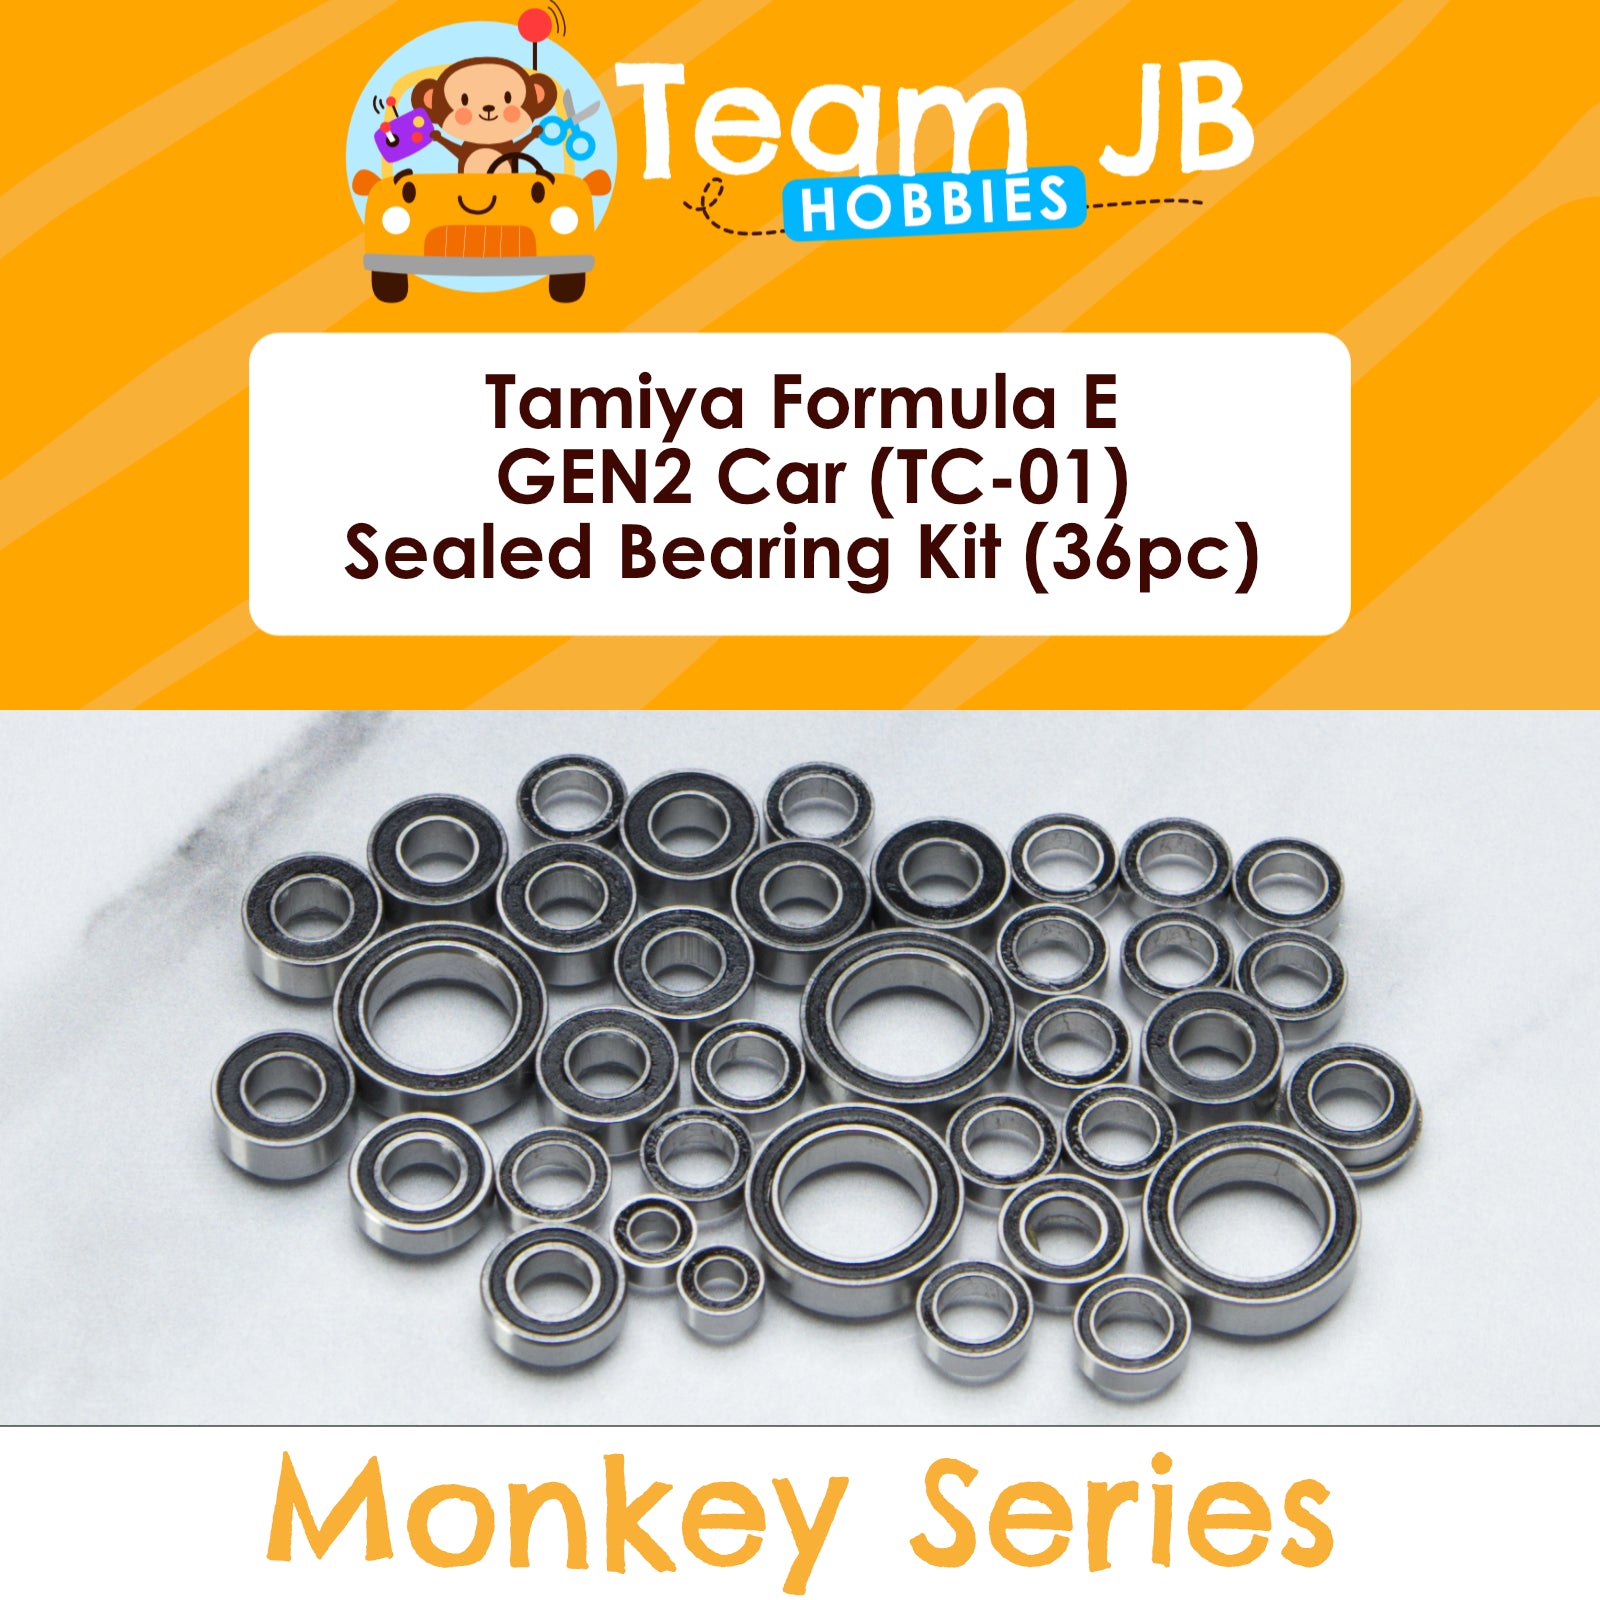 Tamiya Formula E GEN2 Car (TC-01) - Sealed Bearing Kit